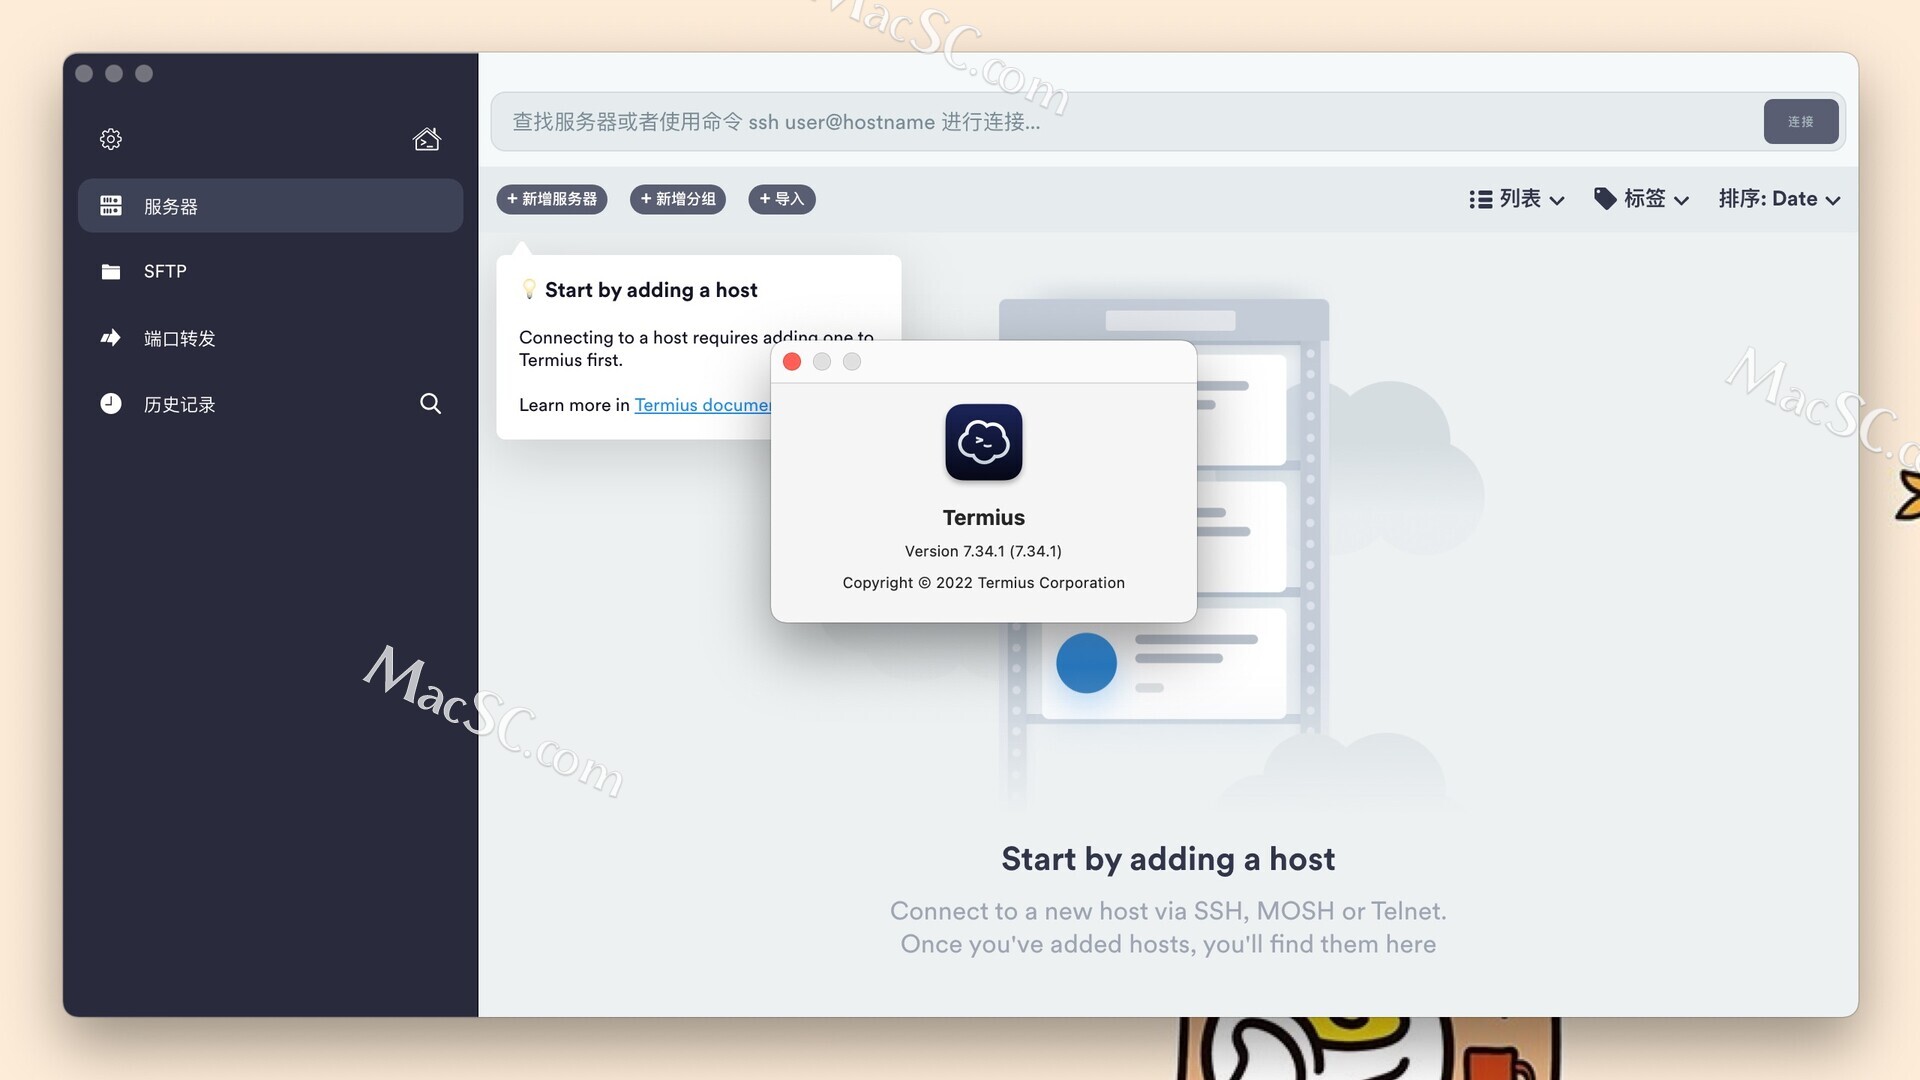 「Termius for Mac」—— 简单易用的SSH终端工具，完美激活版